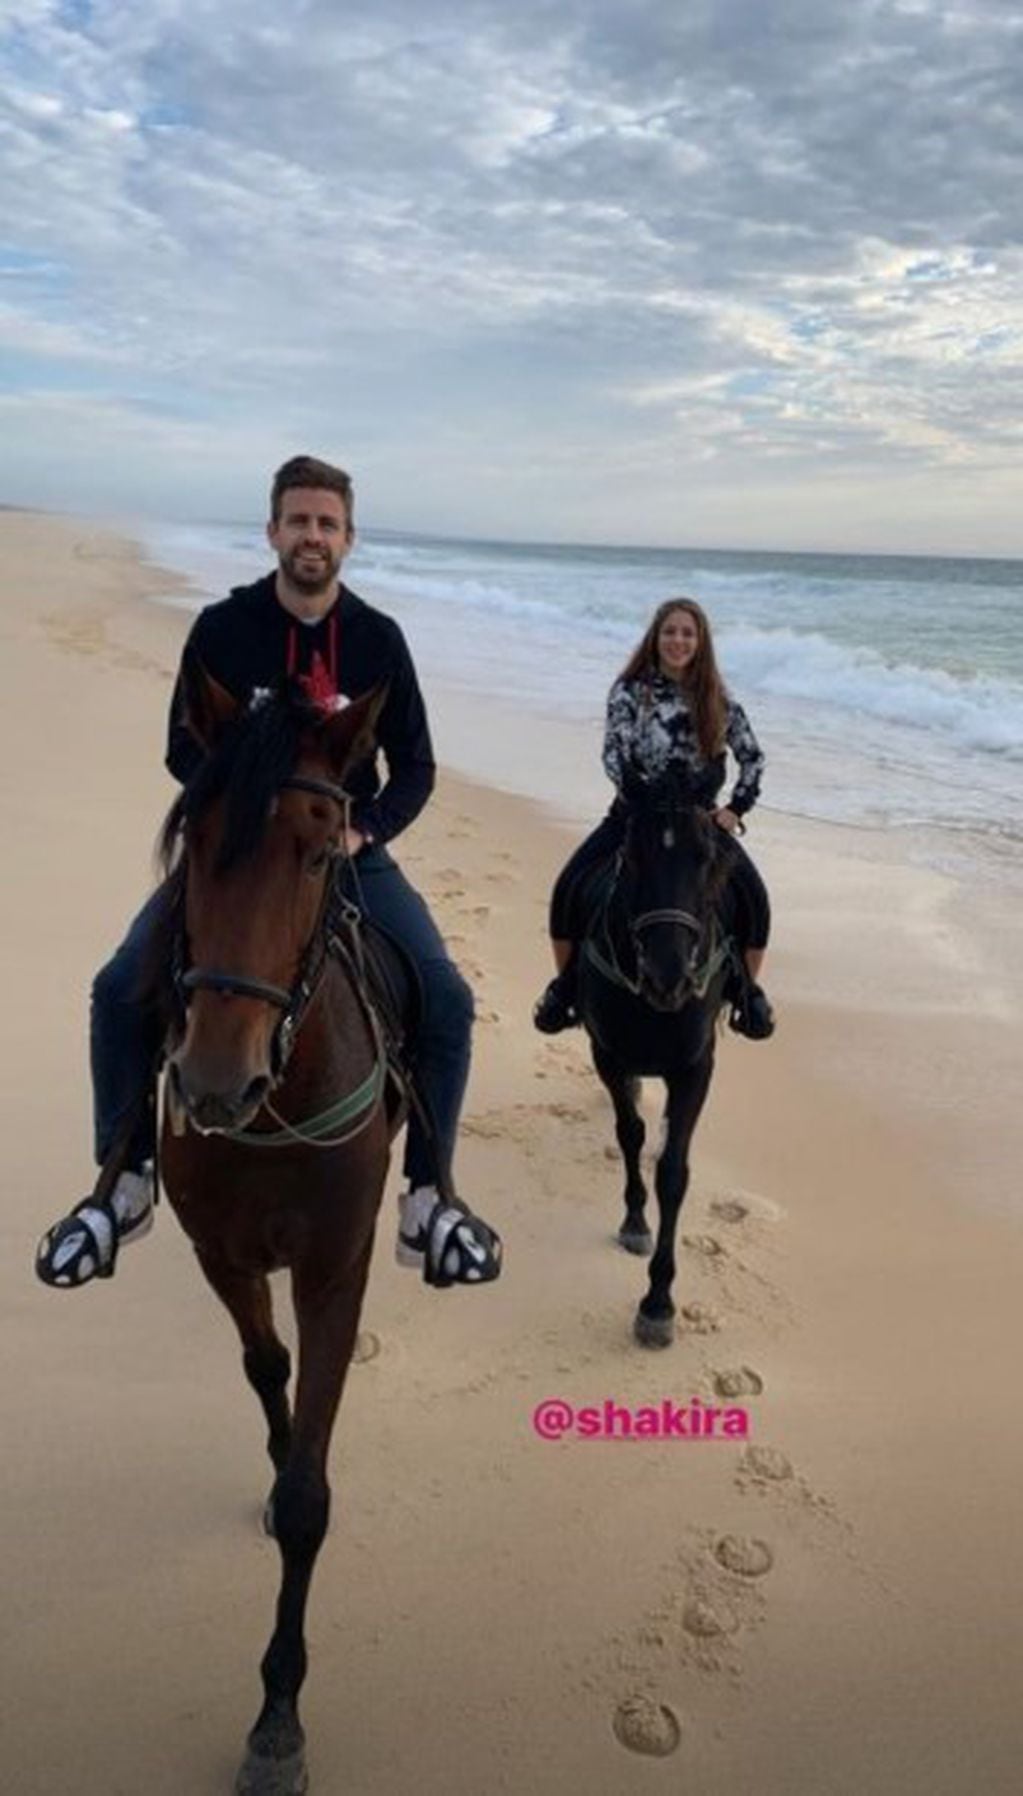 Piqué subió a su cuenta oficial de Instagram una historia donde aparecen ambos paseando en caballo por la playa.